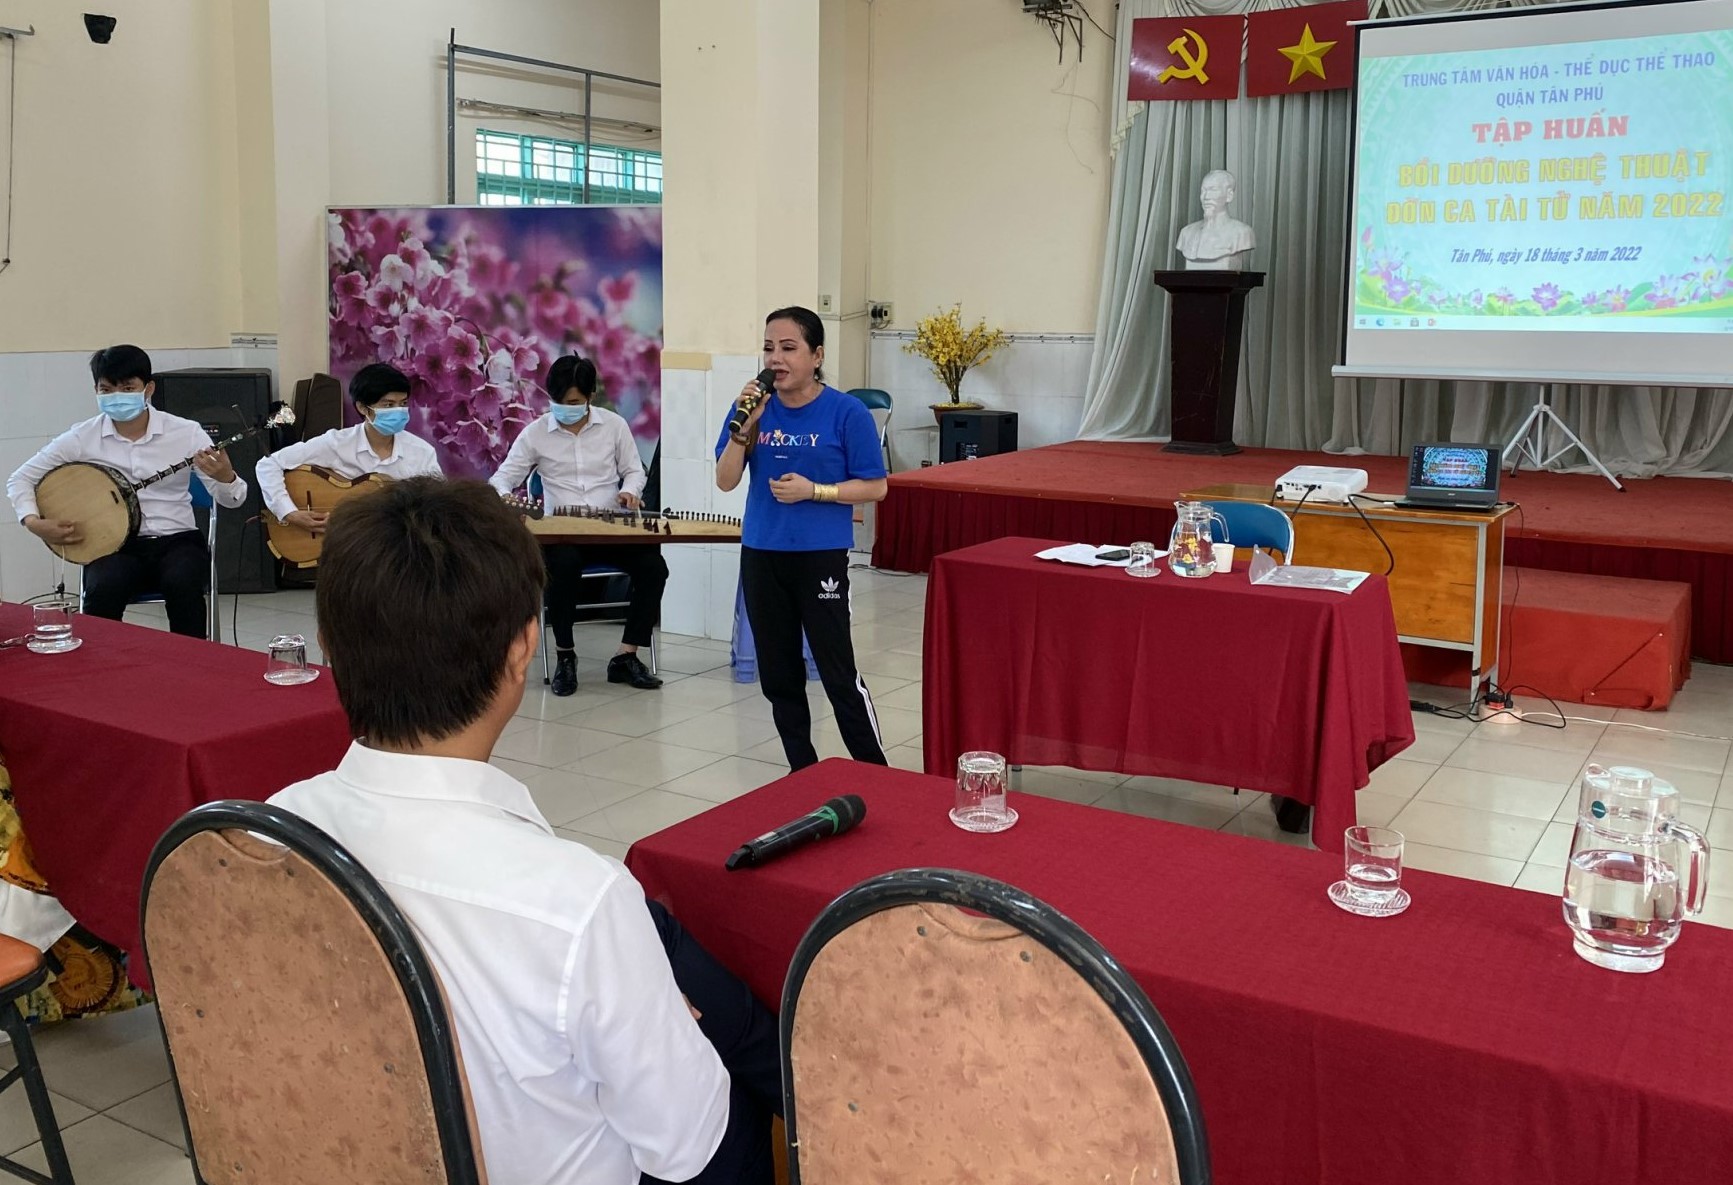 Lớp tập huấn đờn ca tài tử Nam bộ do Trung tâm Văn hóa - Thể dục thể thao quận Tân Phú tổ chức